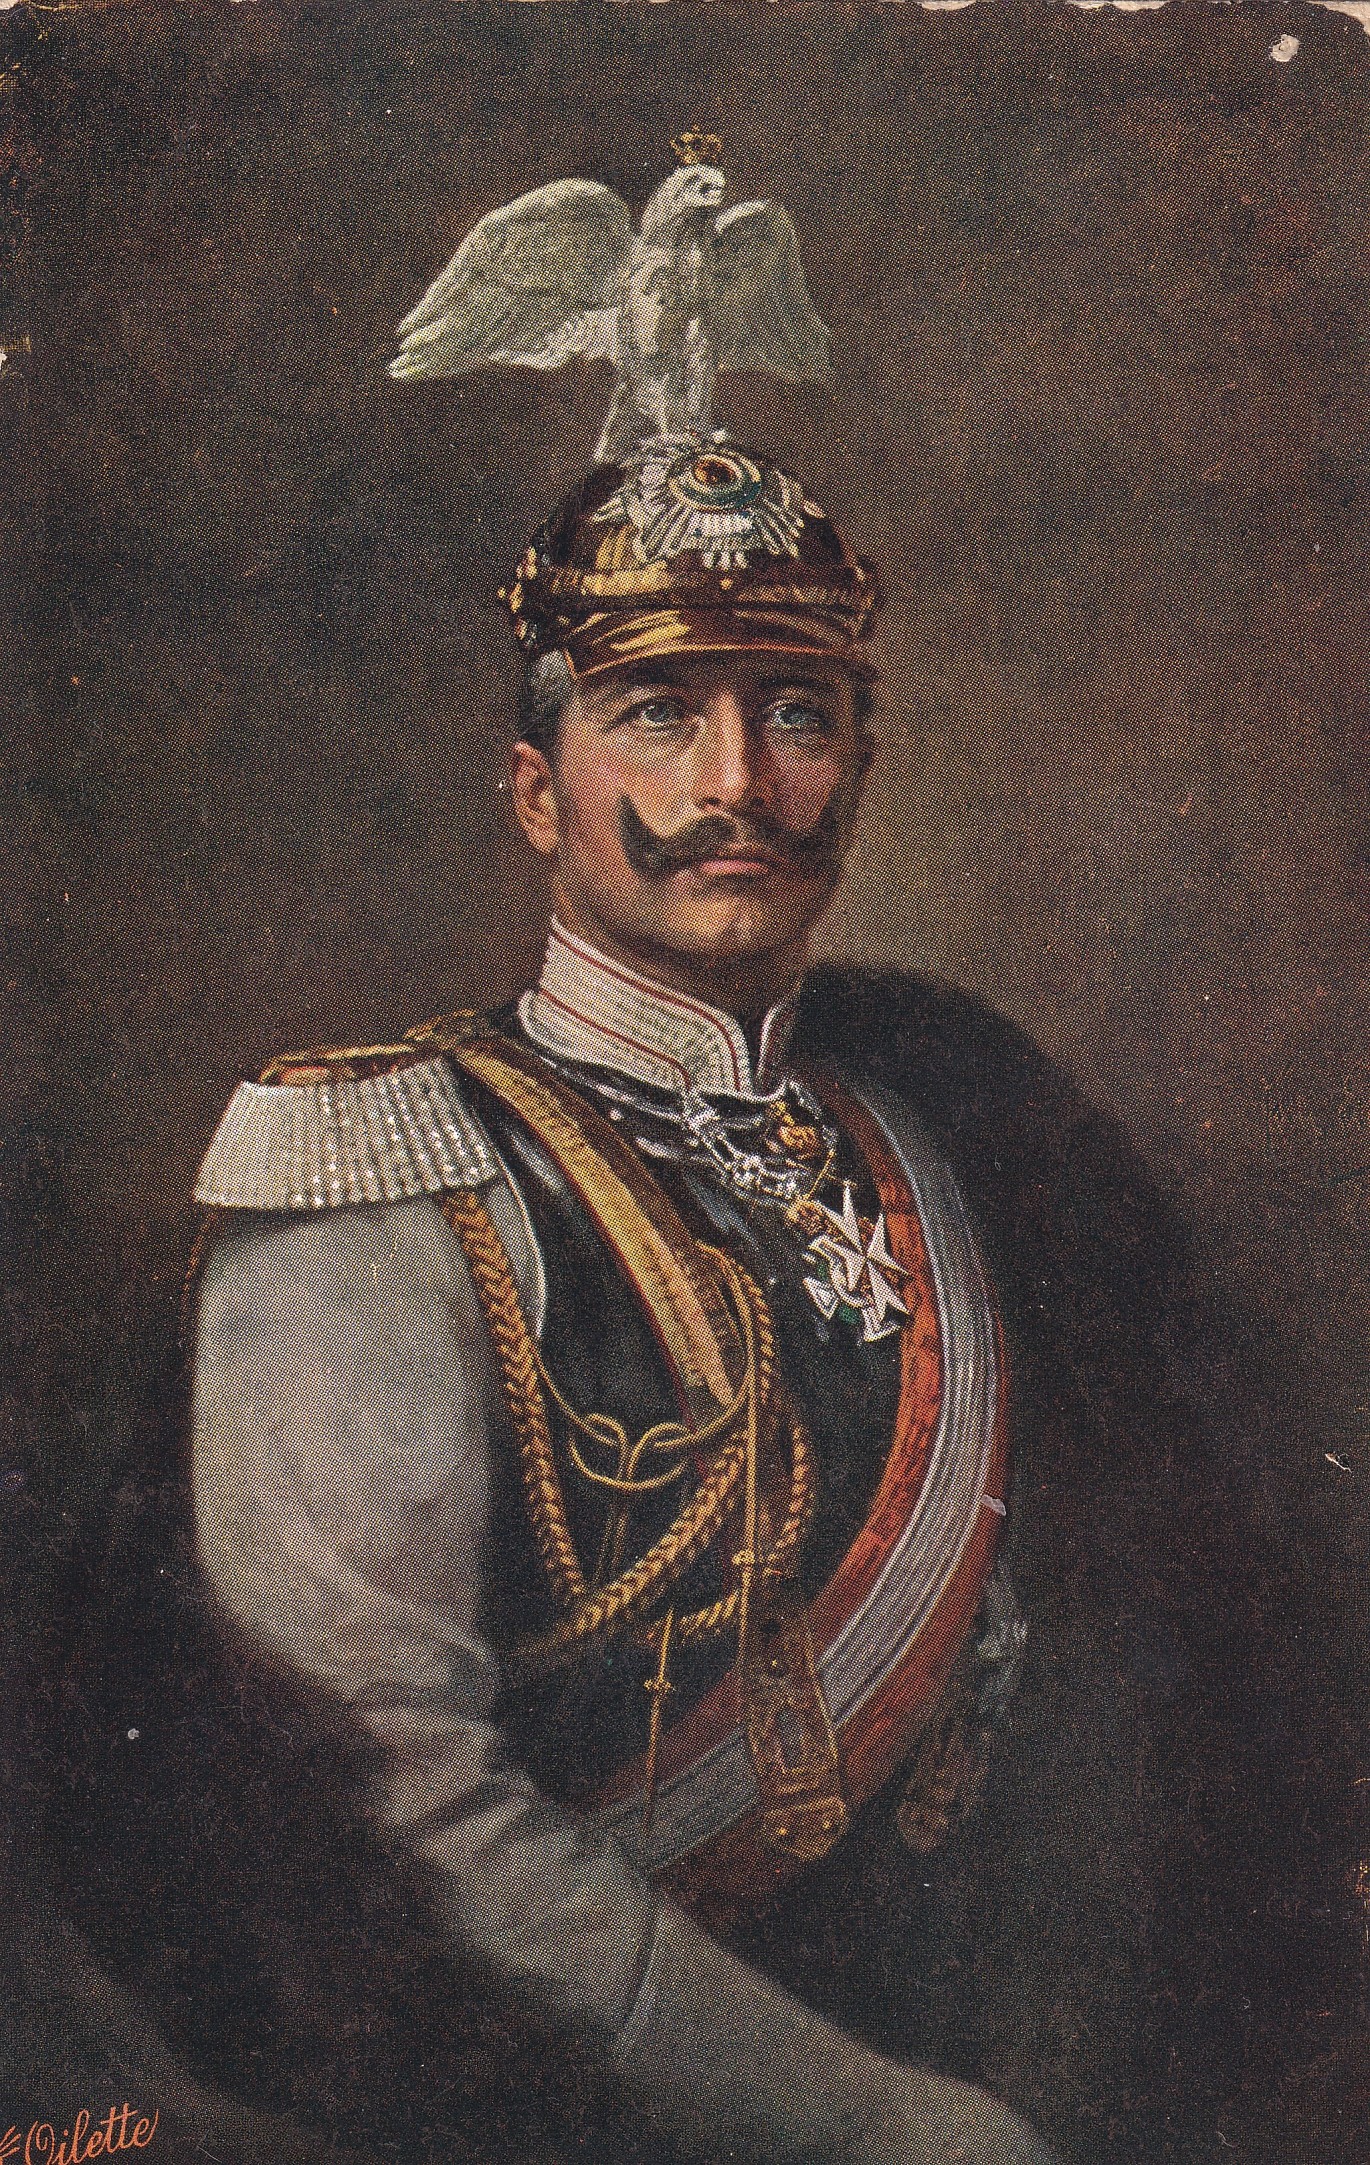 Bildpostkarte mit Porträt Kaiser Wilhelms II. (1859-1941) in Paradeuniform der Garde du Corps, um 1905 (Schloß Wernigerode GmbH RR-F)